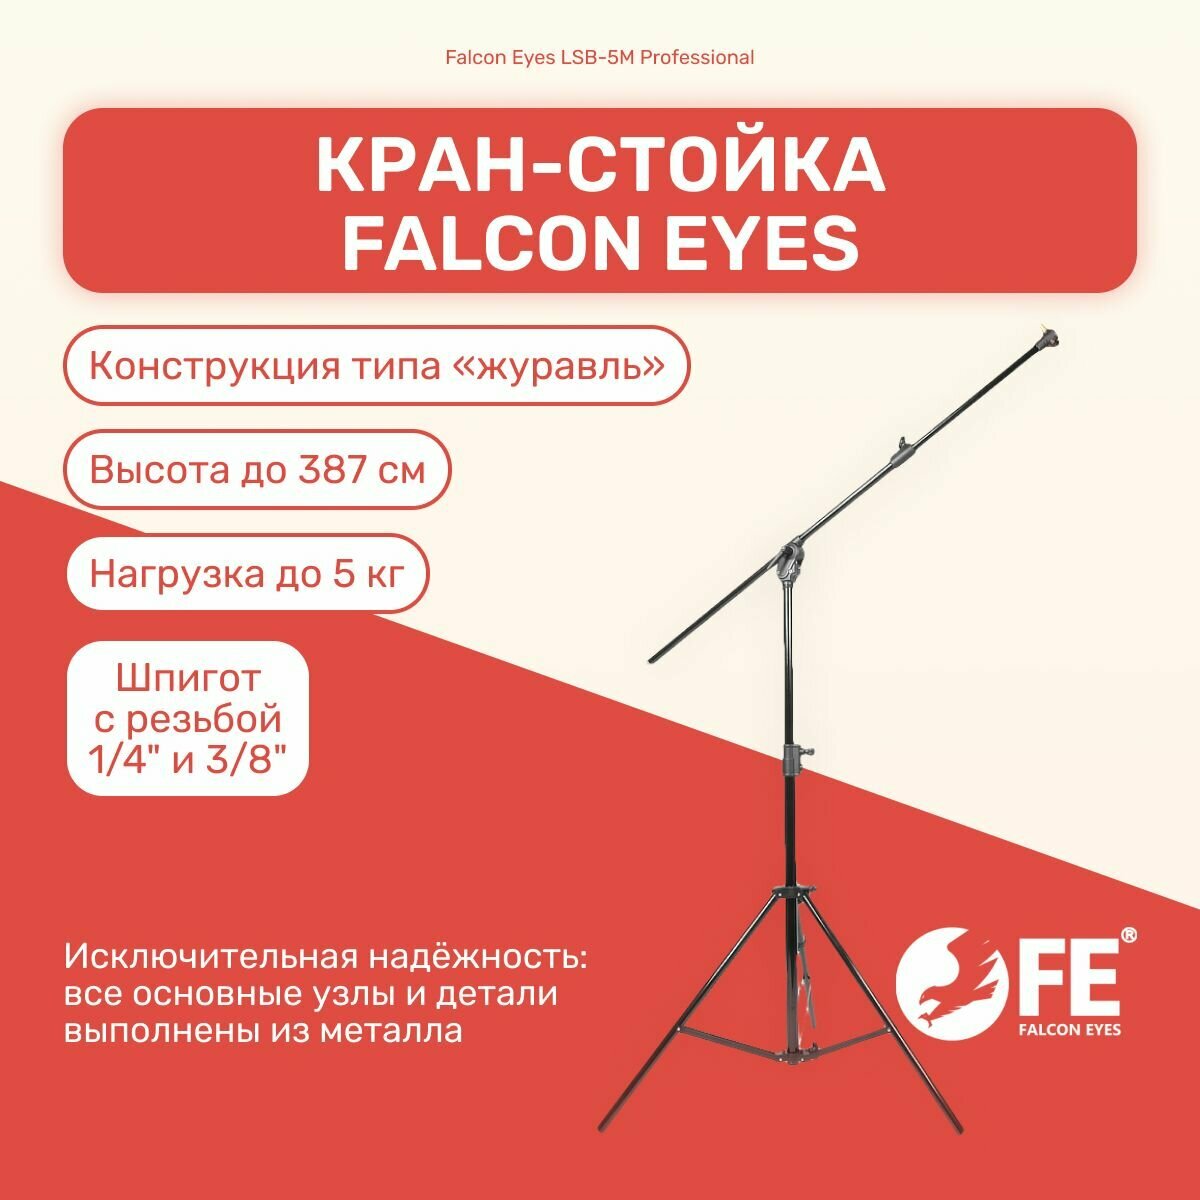 Кран-стойка Falcon Eyes LSB-5M Professional, высота 387 см, для фото/видеостудии, студийное оборудование